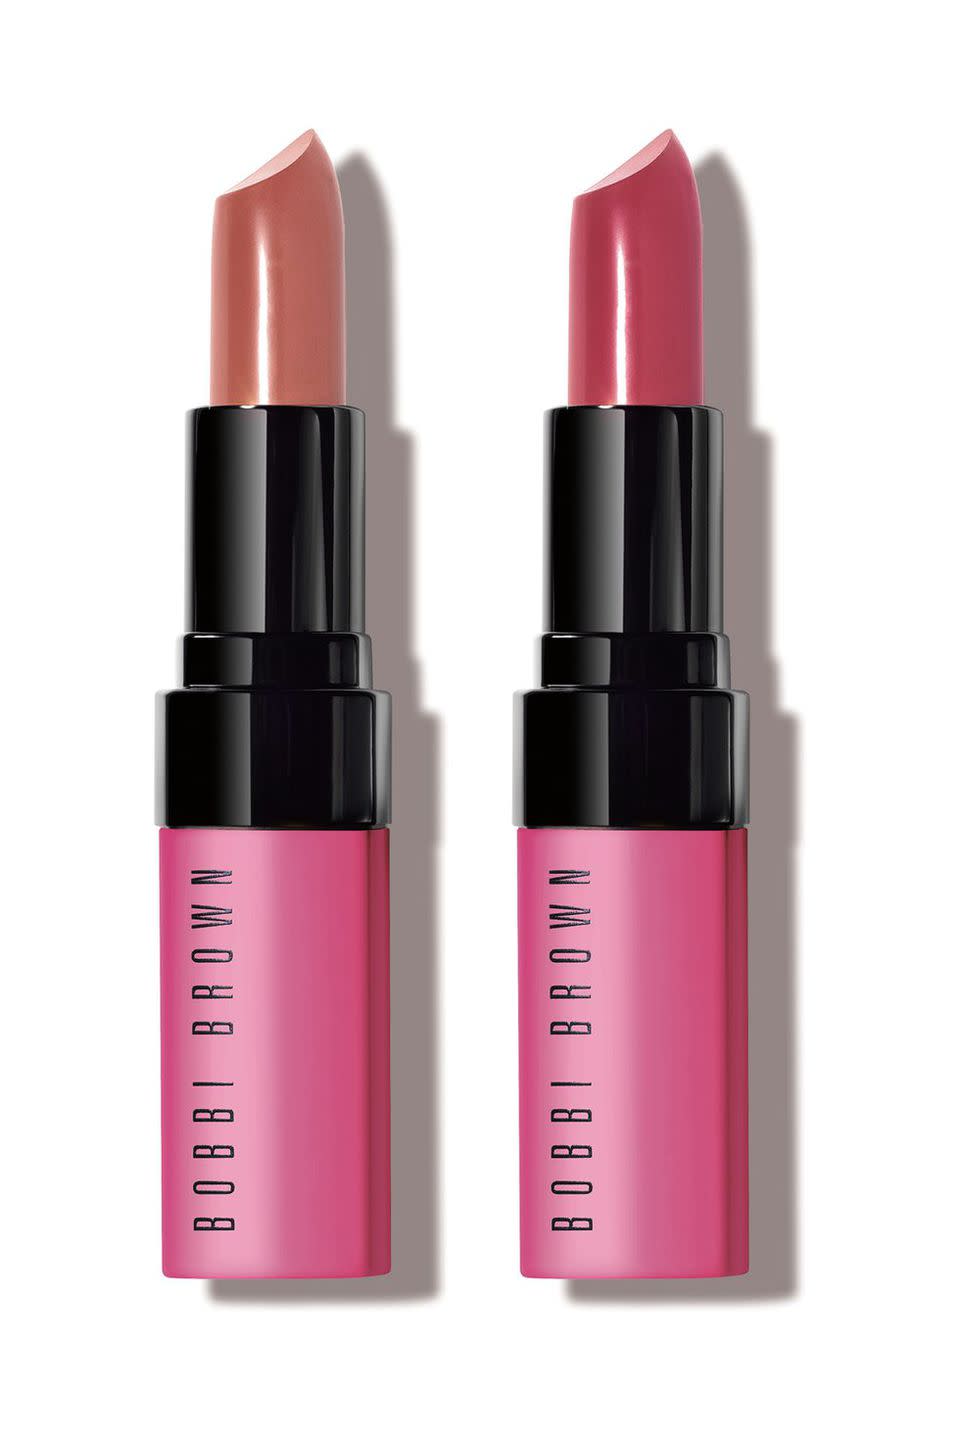 Bobbi Brown BCA Pinks With Purpose Lip Color Duo - £35